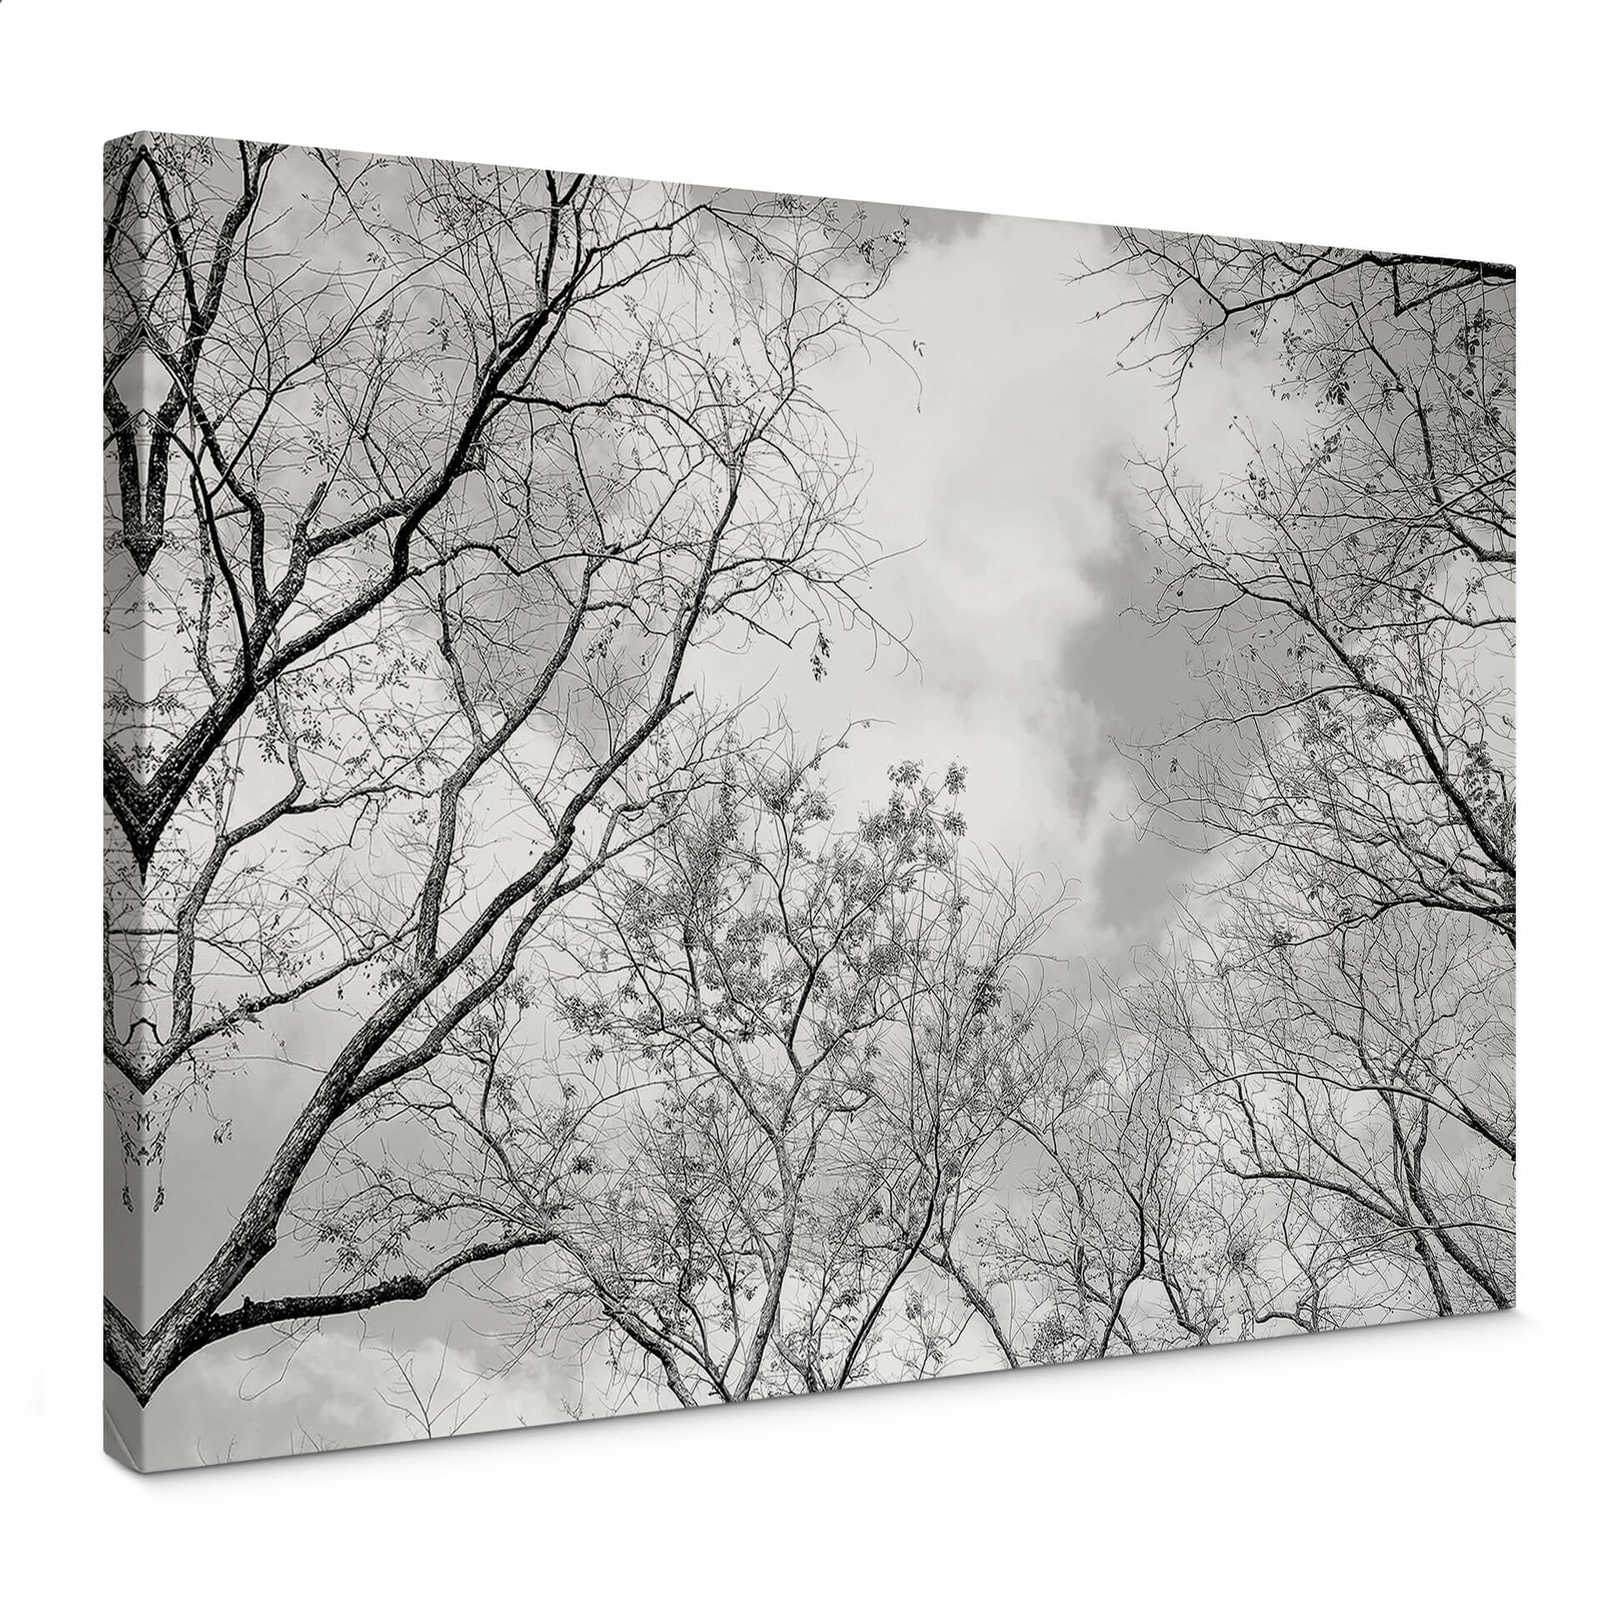         Schwarz-Weiß Leinwandbild Natur – 0,70 m x 0,50 m
    